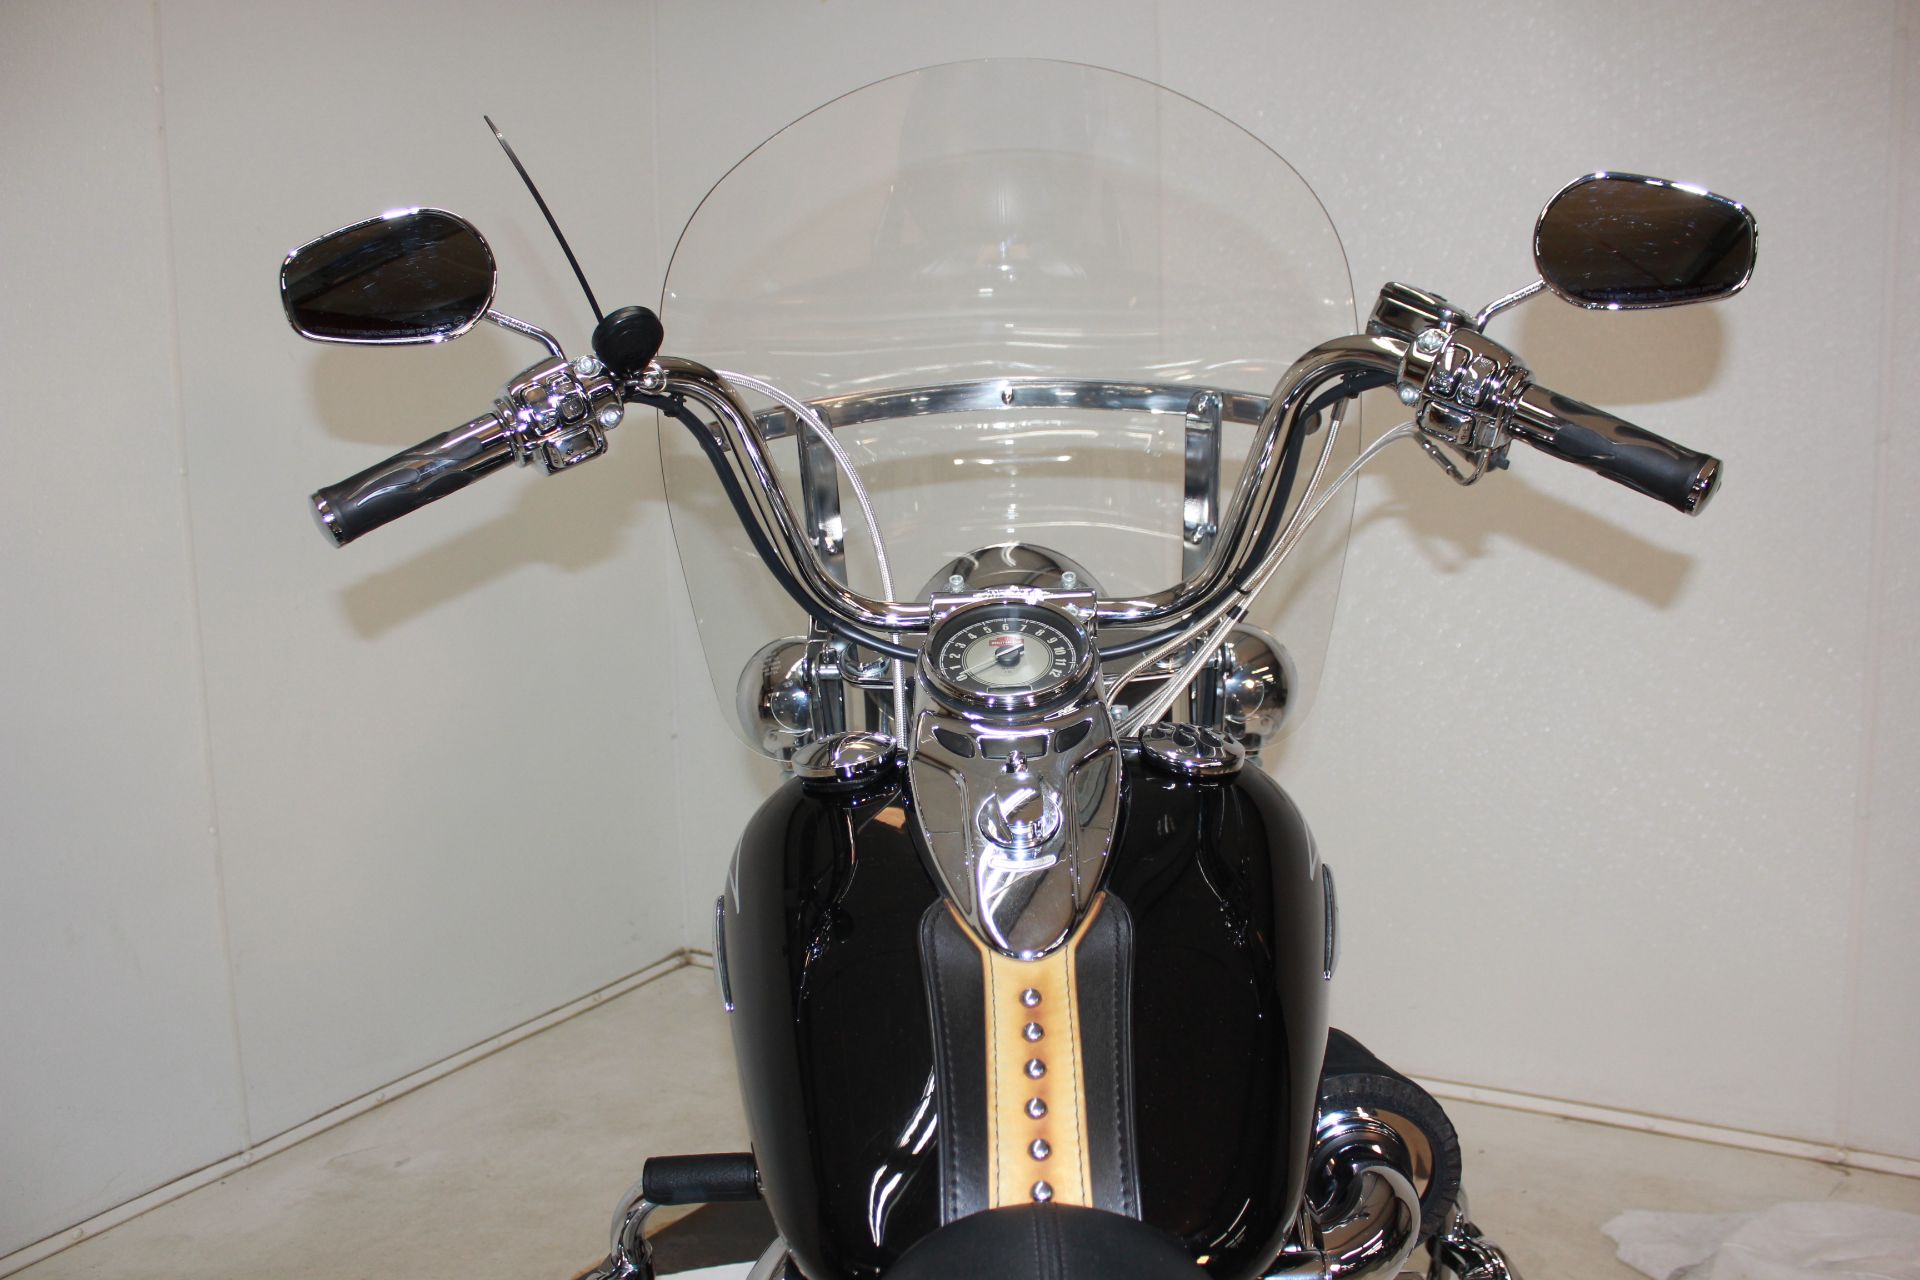 2009 Harley-Davidson Heritage Softail® Classic in Pittsfield, Massachusetts - Photo 9